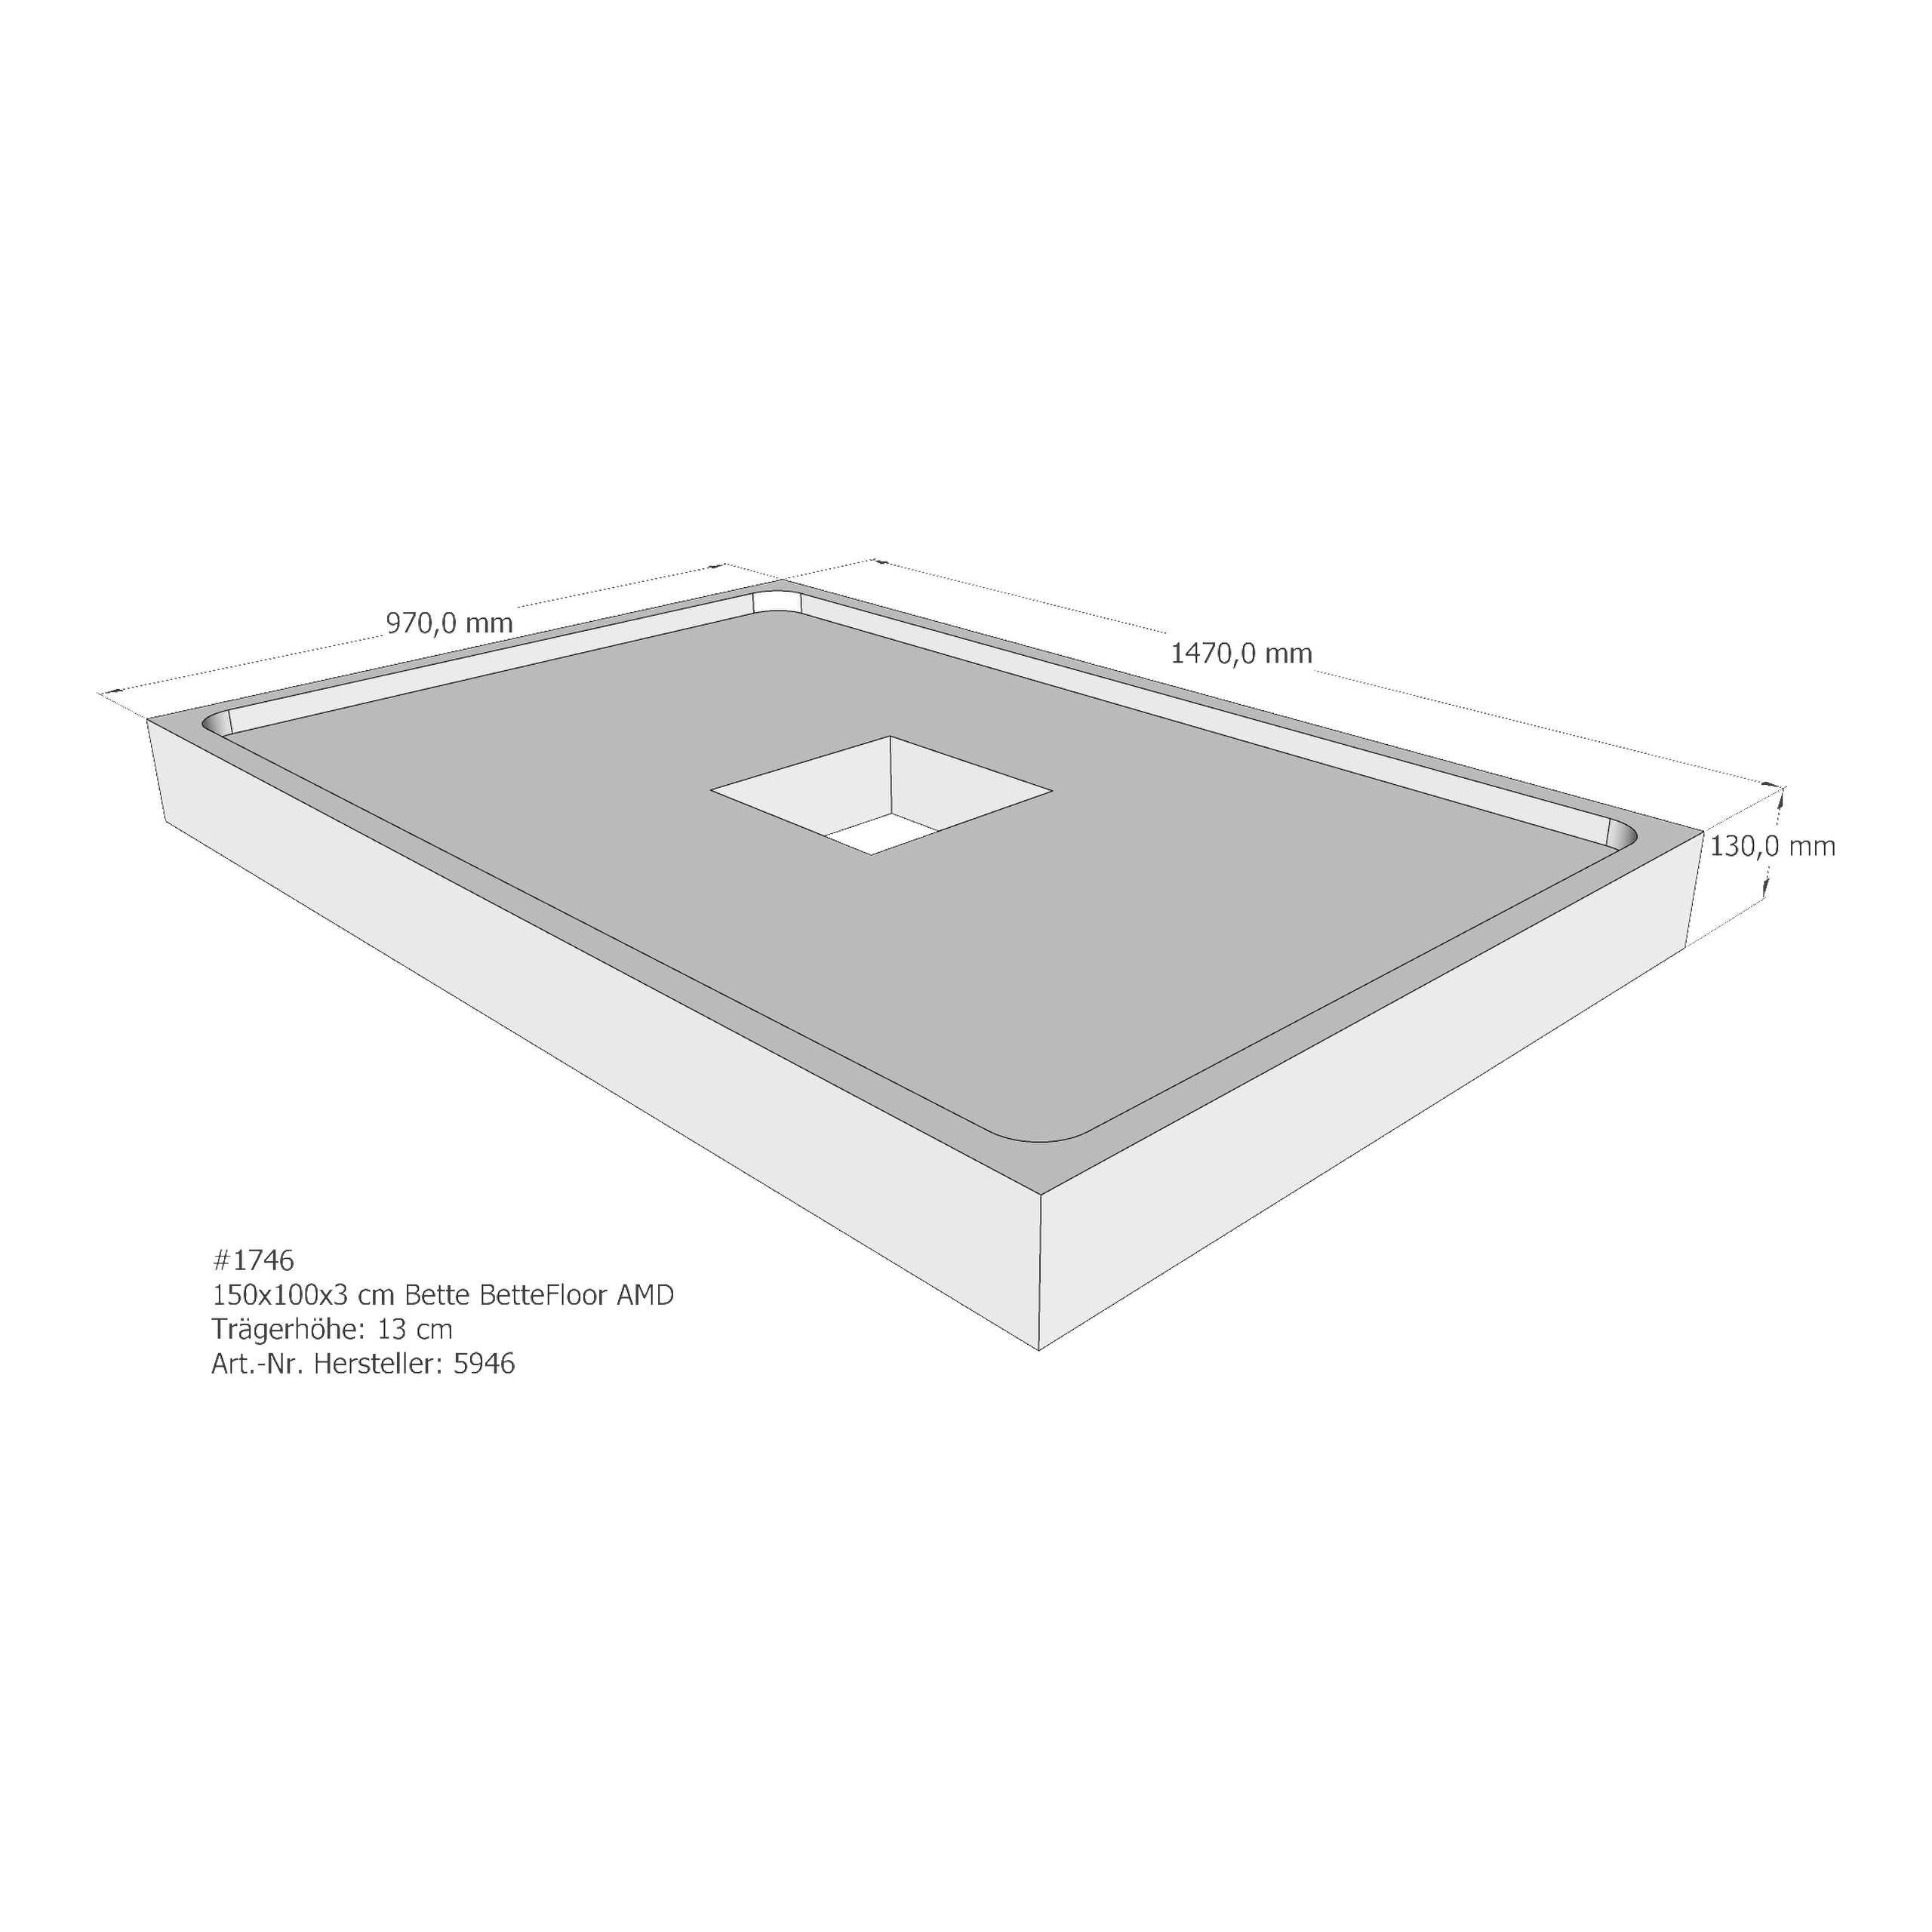 Duschwannenträger Bette BetteFloor 150x100x3 cm AMD